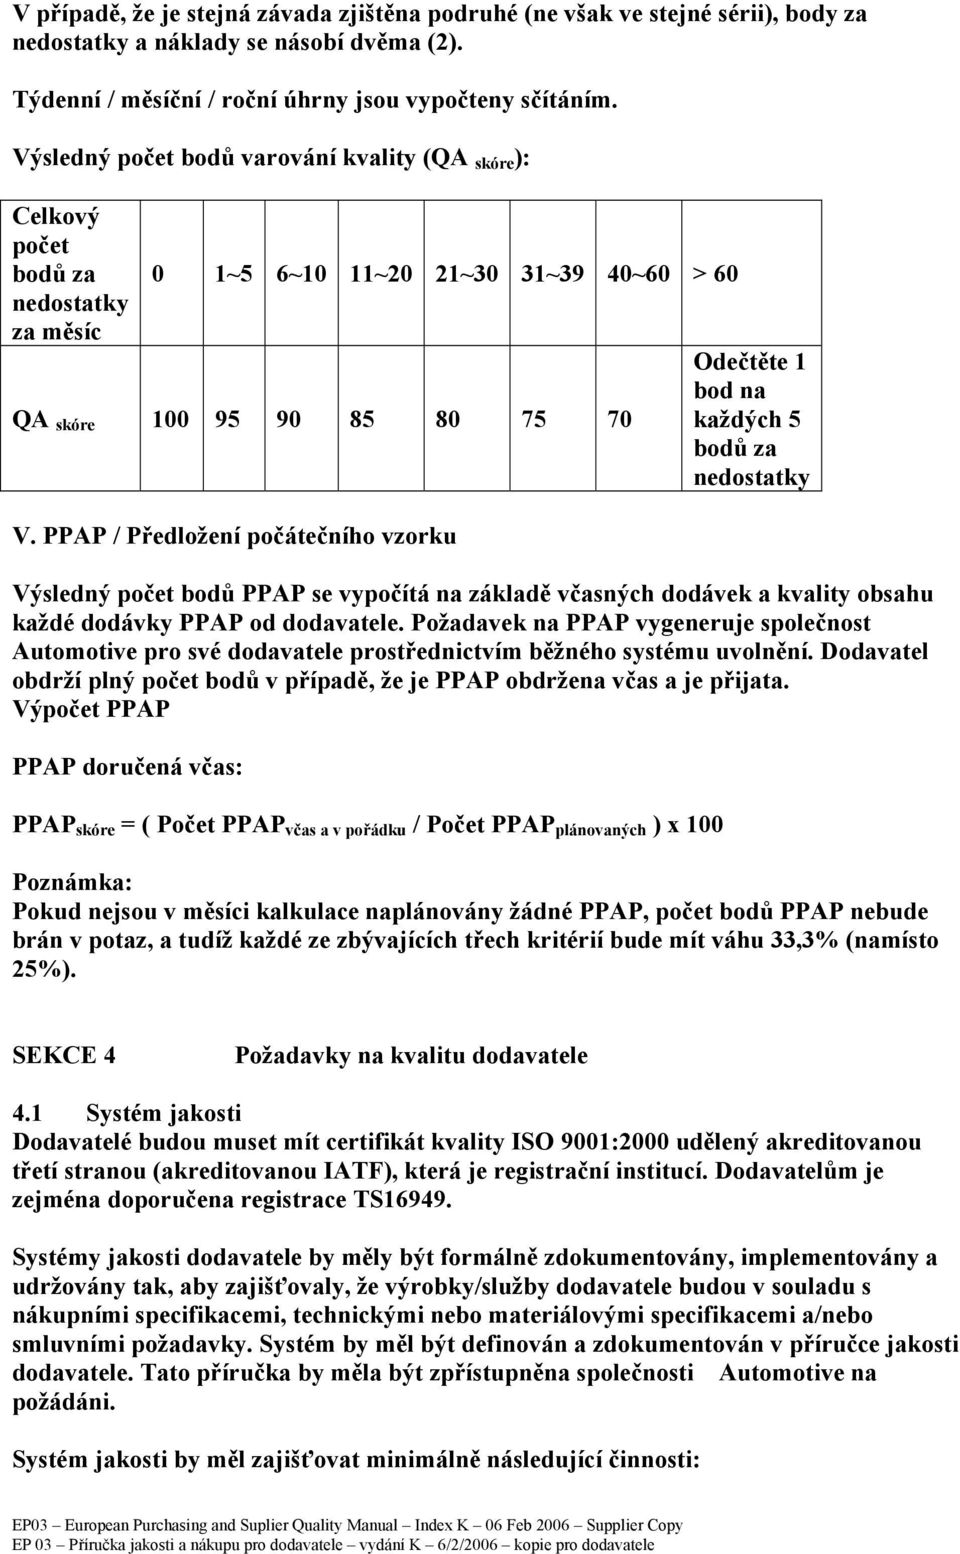 PPAP / Předložení počátečního vzorku Odečtěte 1 bod na každých 5 bodů za nedostatky Výsledný počet bodů PPAP se vypočítá na základě včasných dodávek a kvality obsahu každé dodávky PPAP od dodavatele.